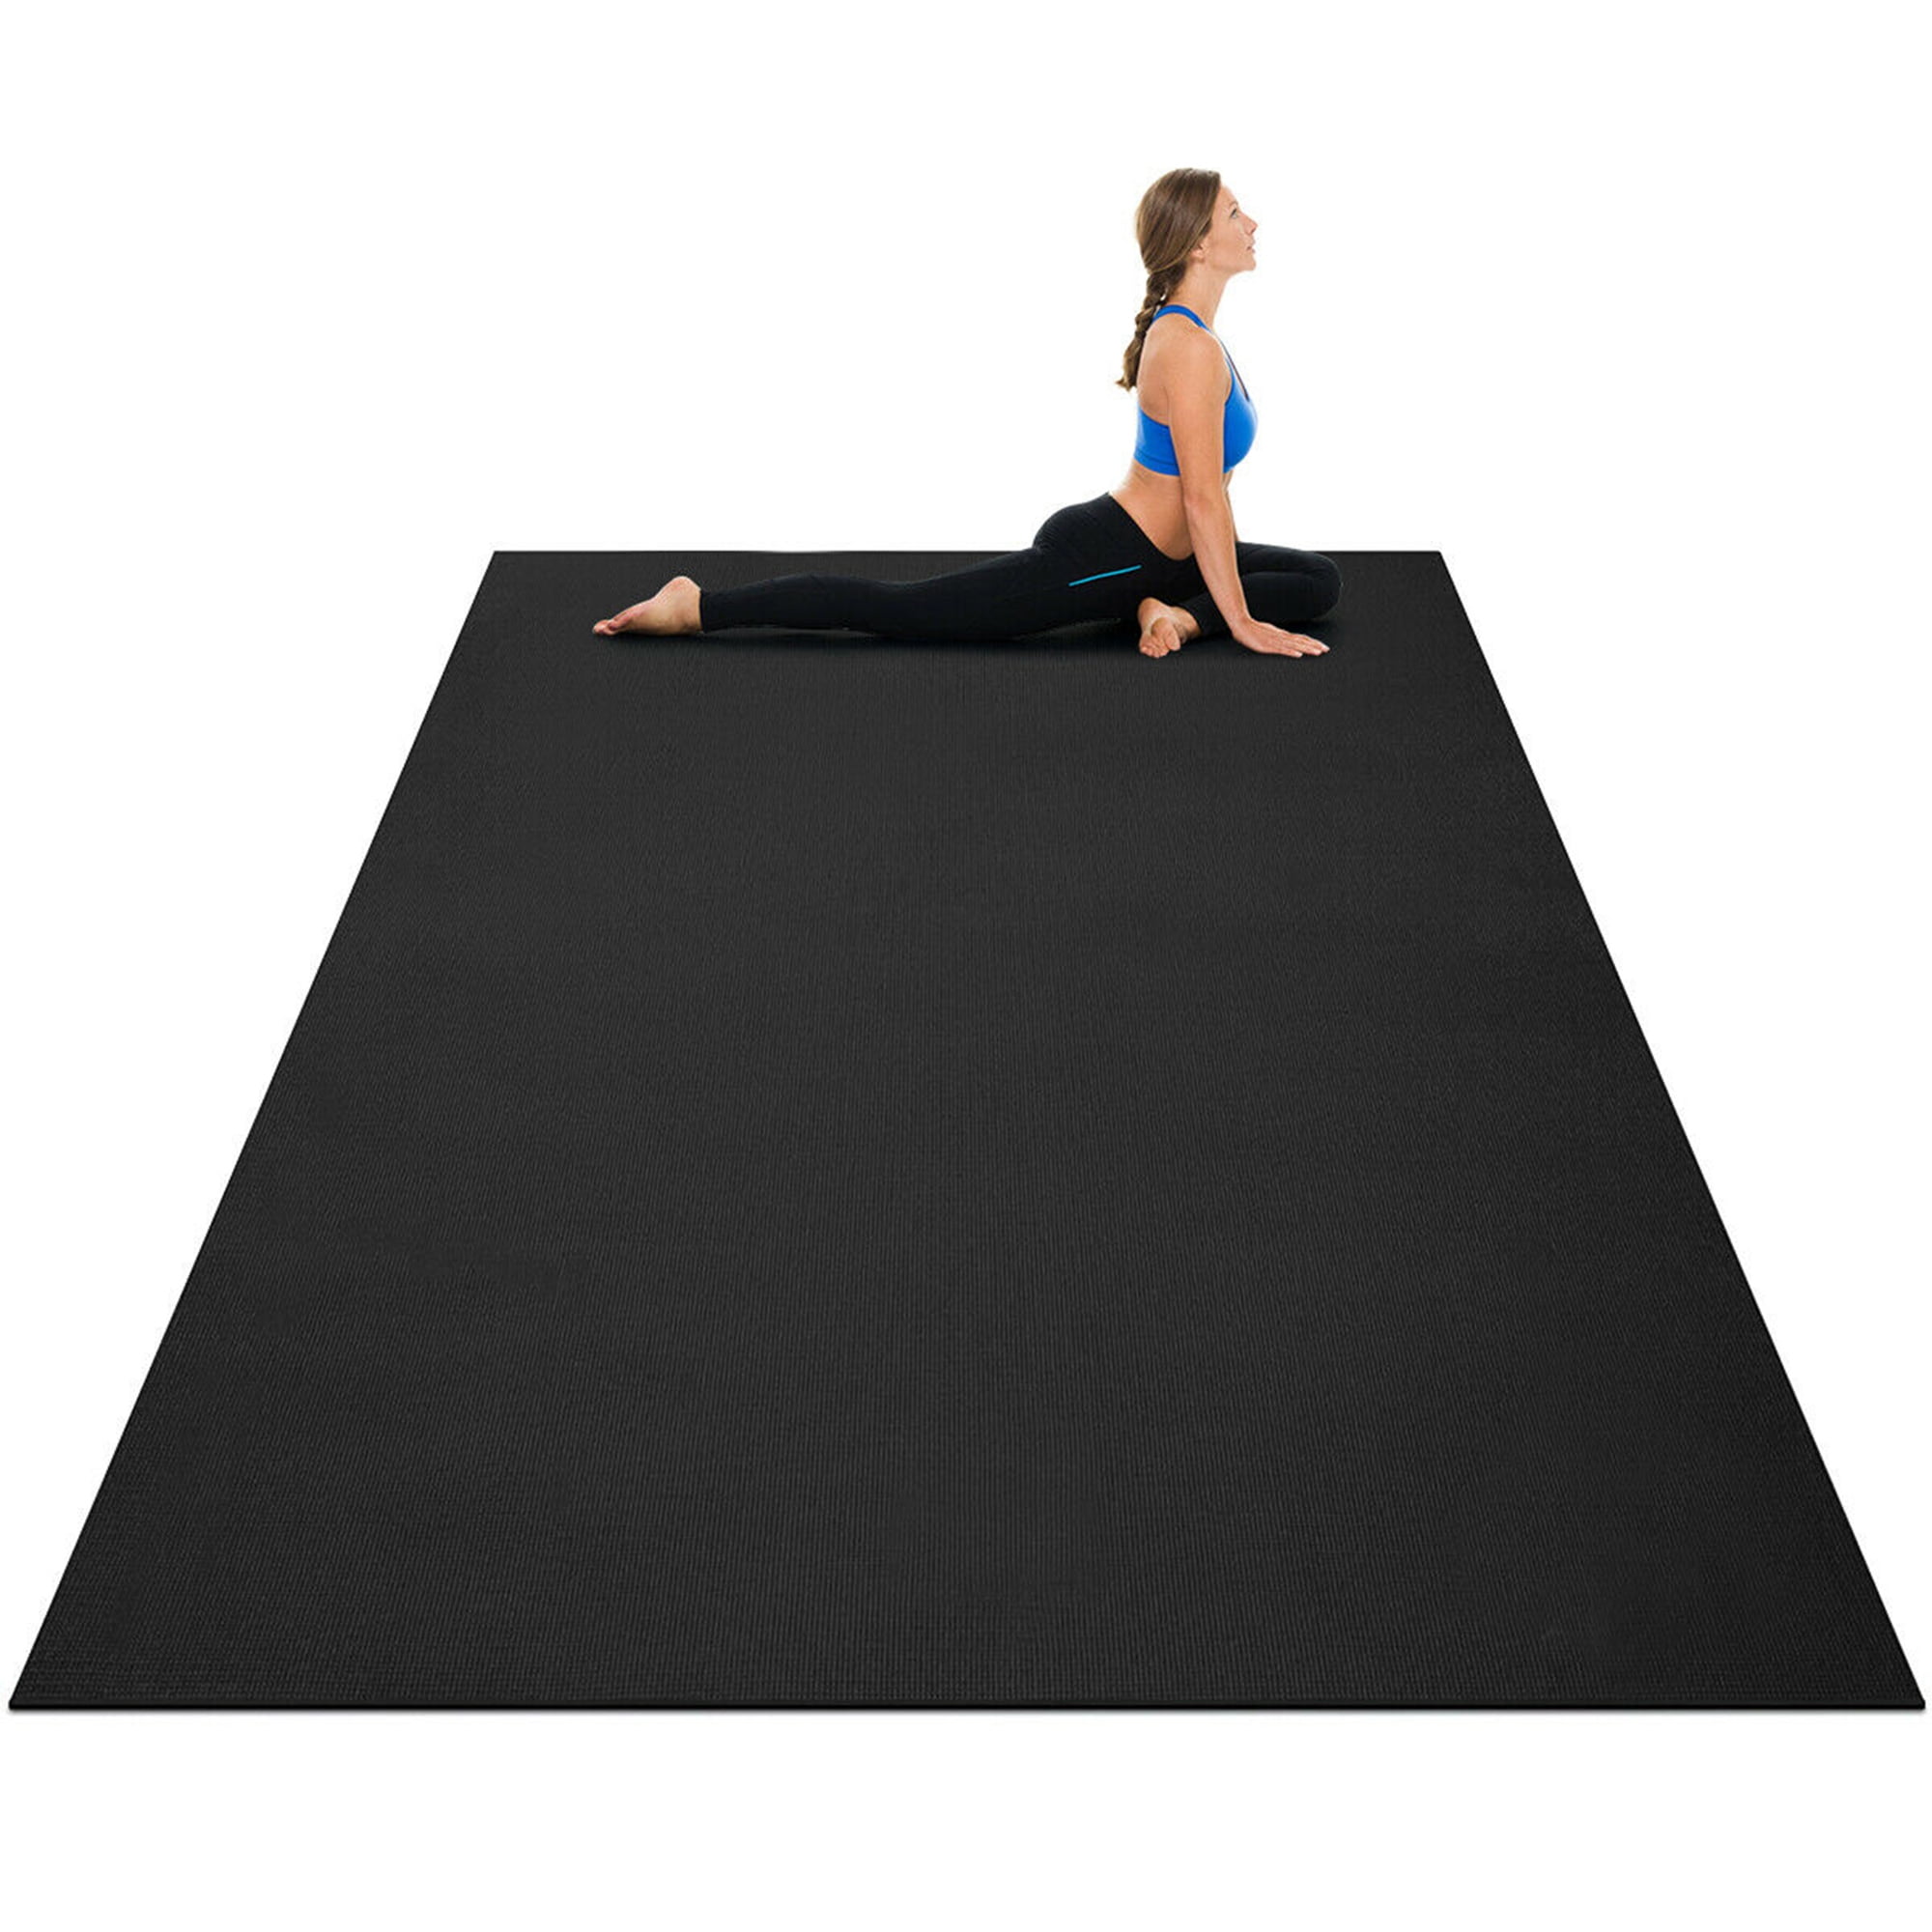 6 x Thick Exercise Floor Mats Kit For Men Women Yoga Training Gym Equipment Set 